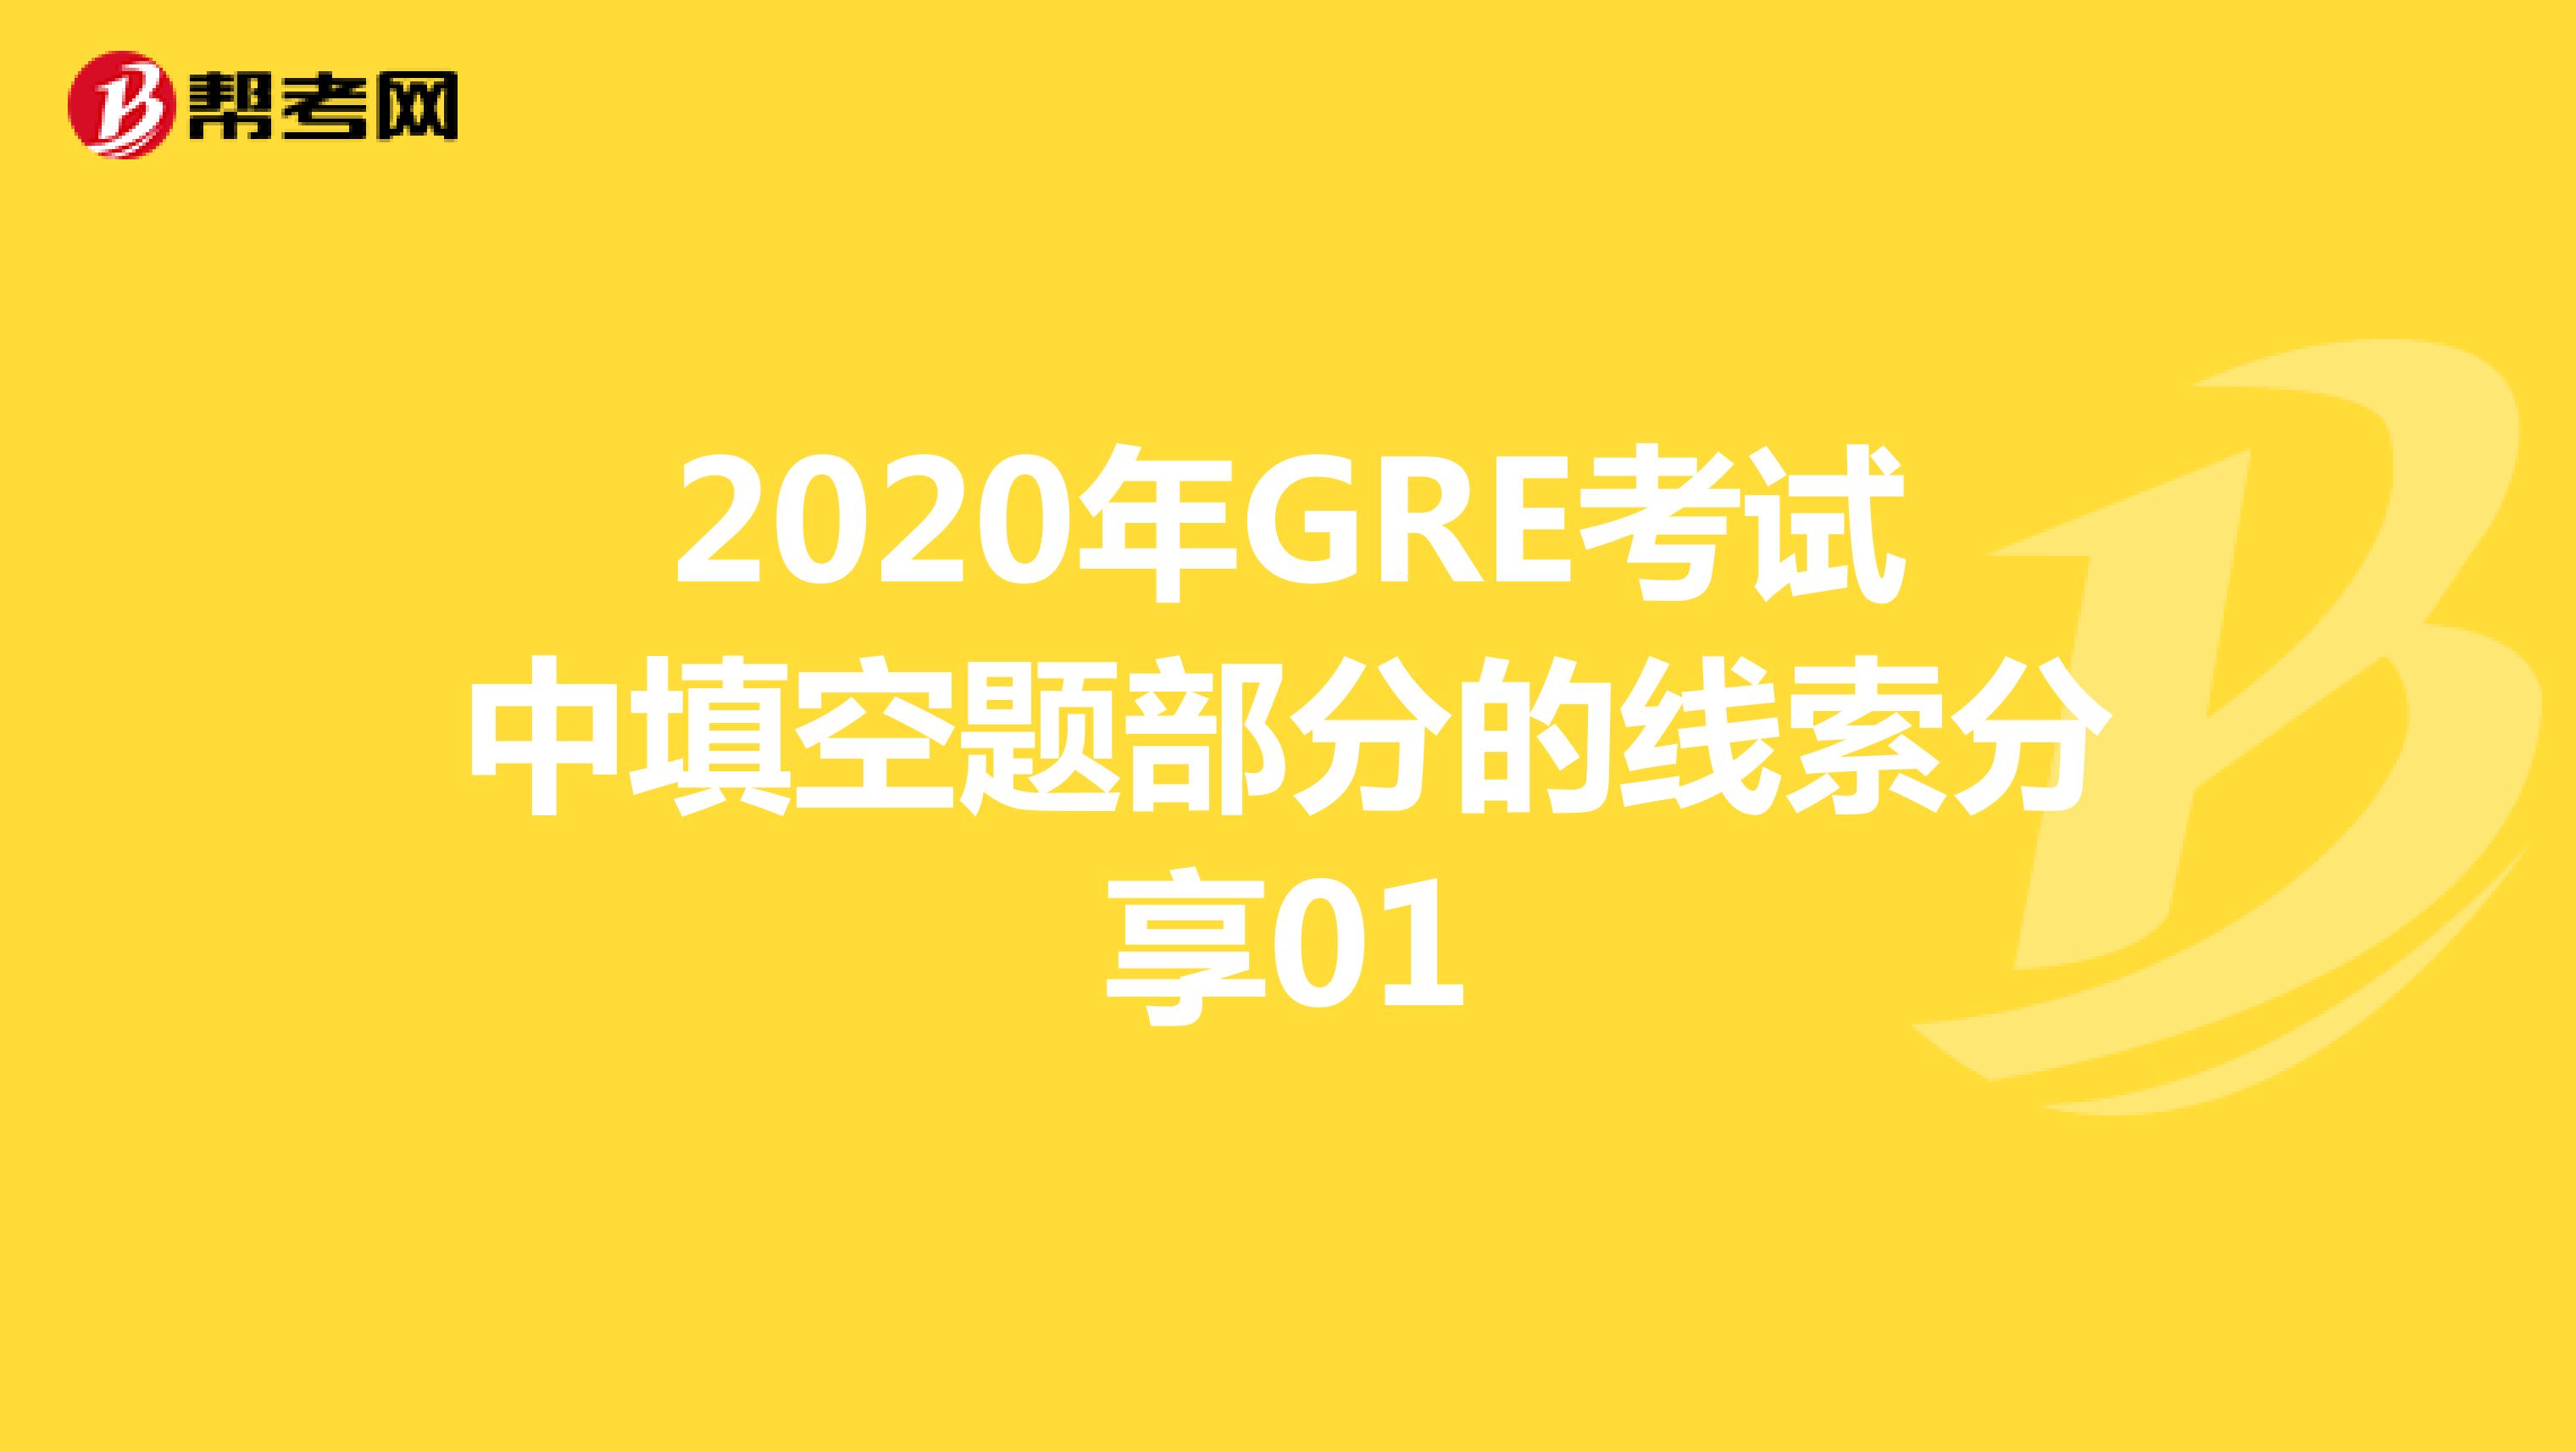 2020年GRE考试中填空题部分的线索分享01